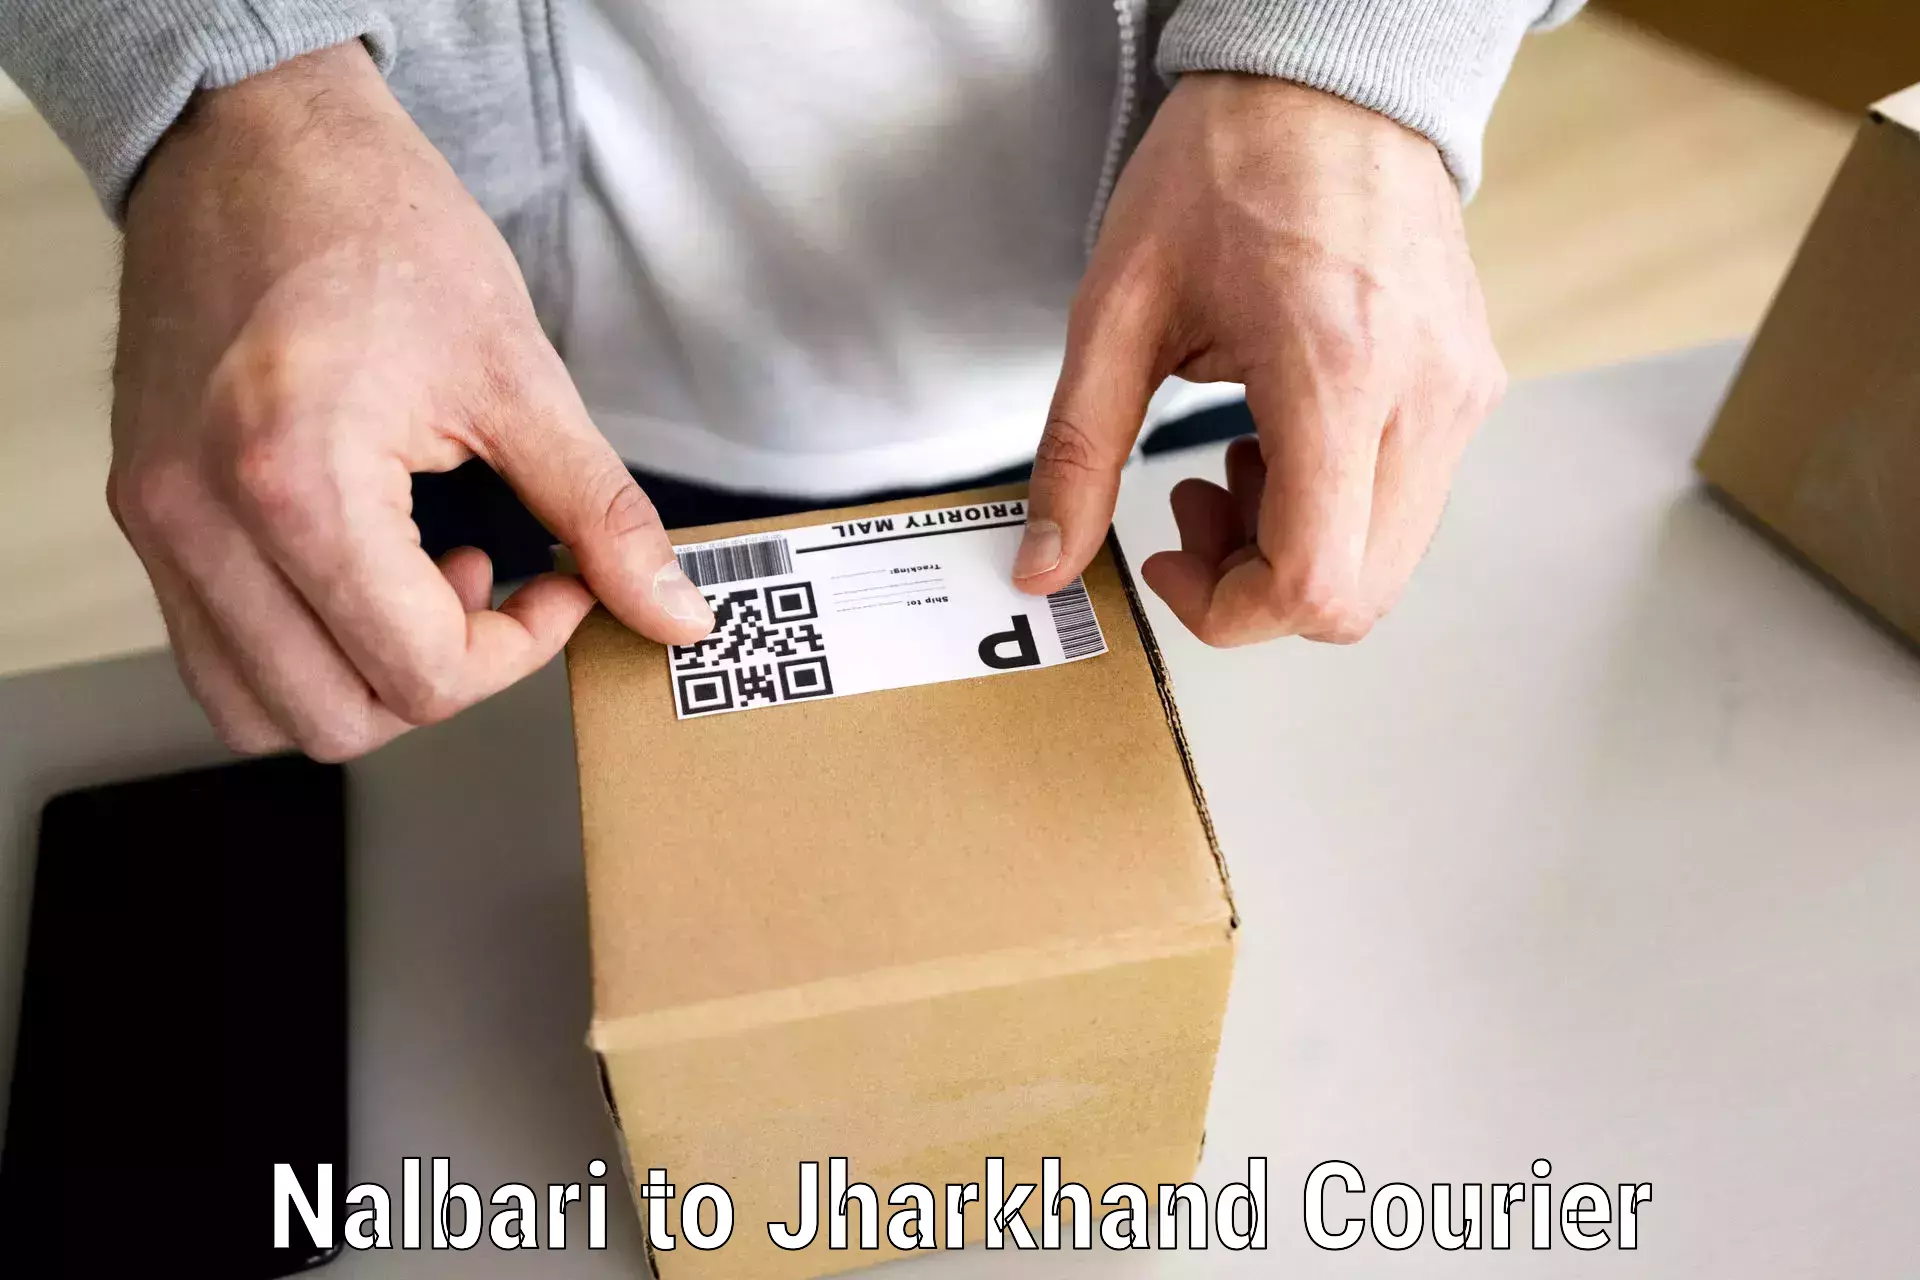 Seamless moving process Nalbari to Jharkhand